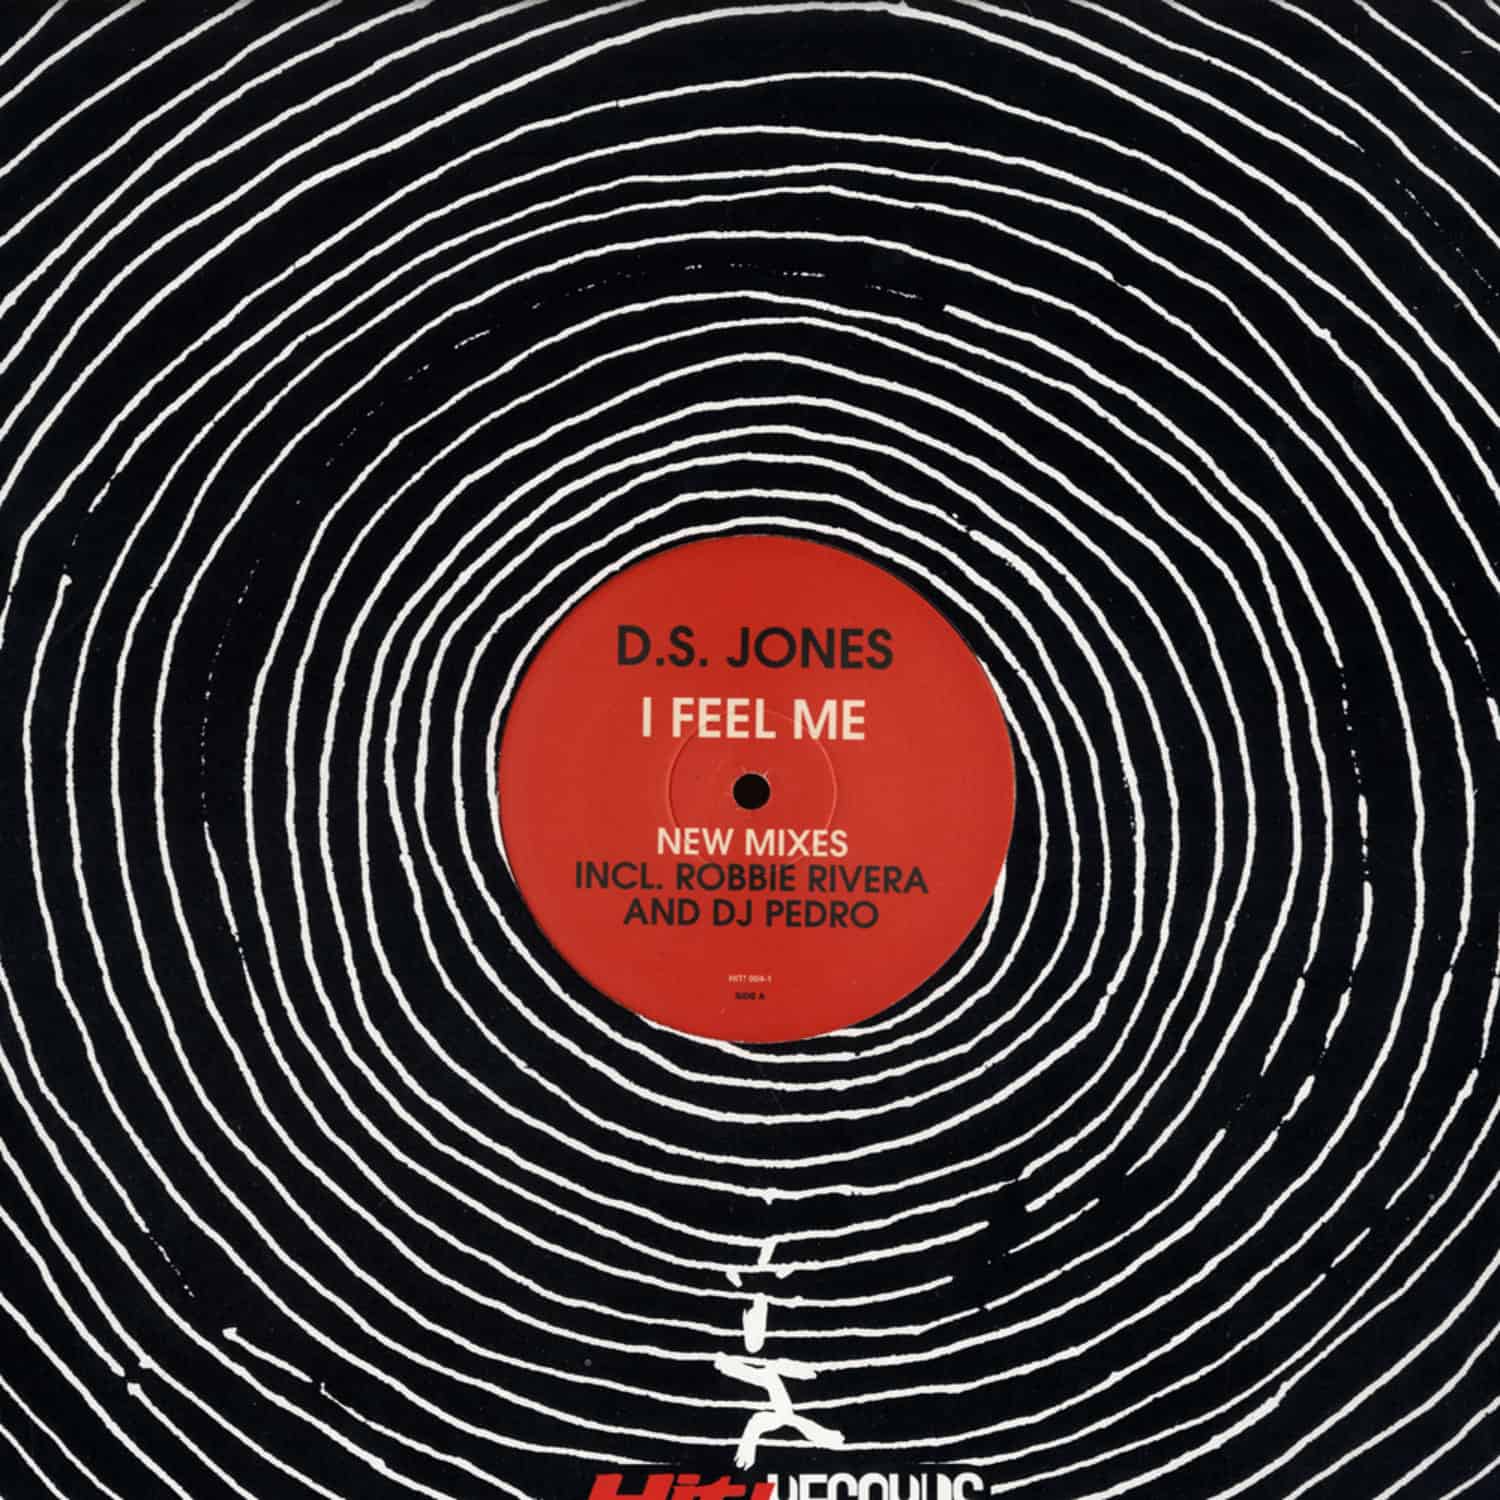 DS Jones - I FEEL ME 